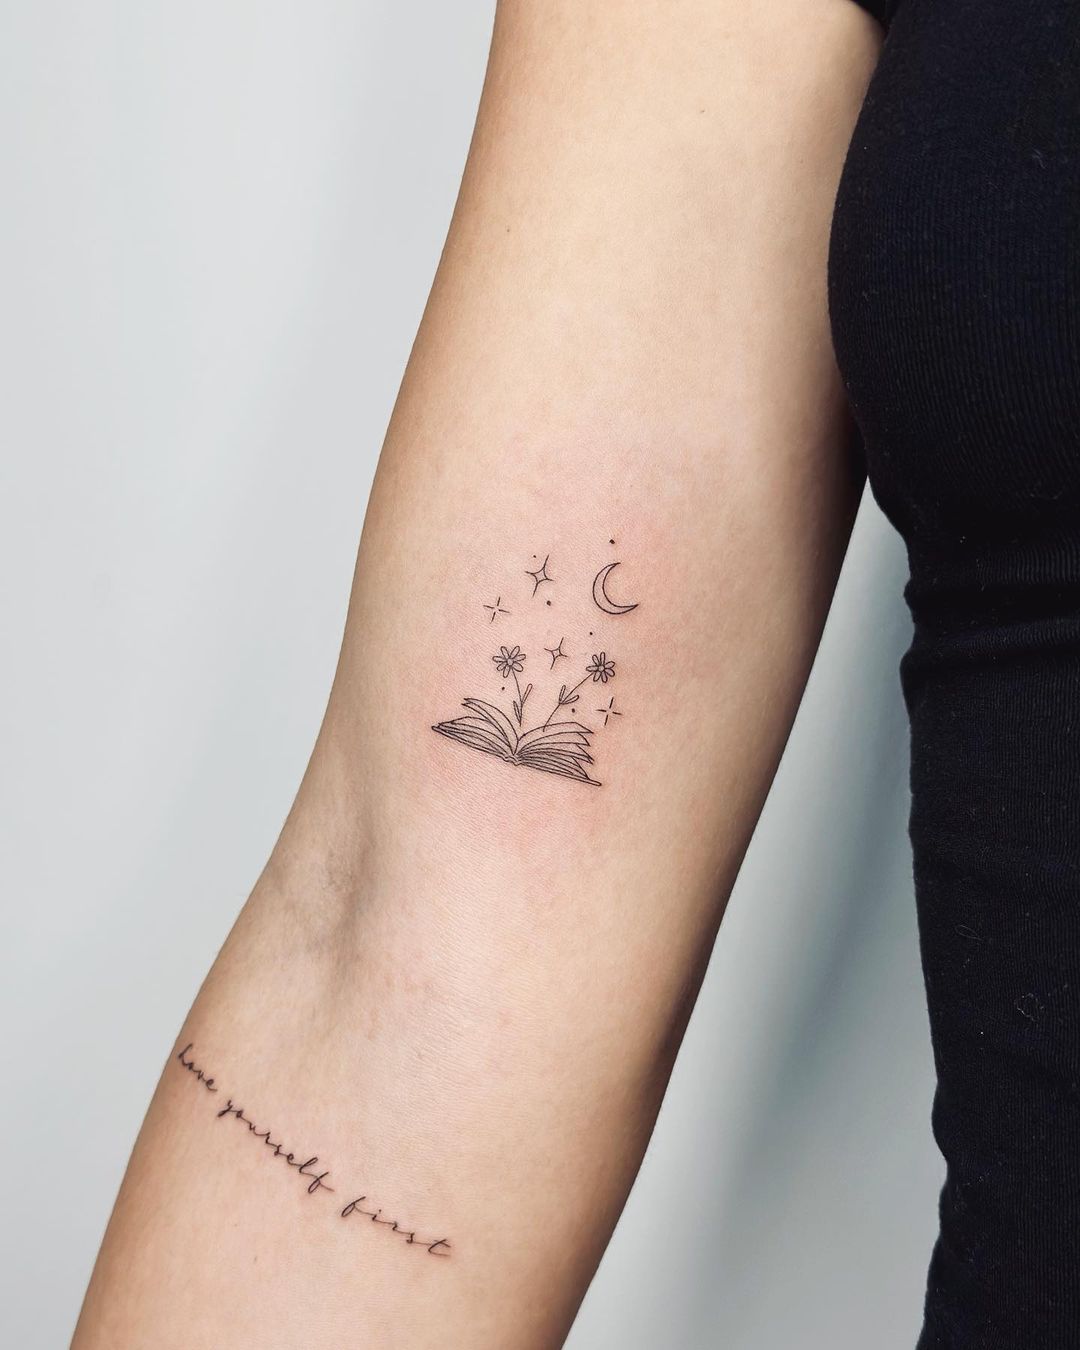 Minimalistic book tattoo by tattooing g